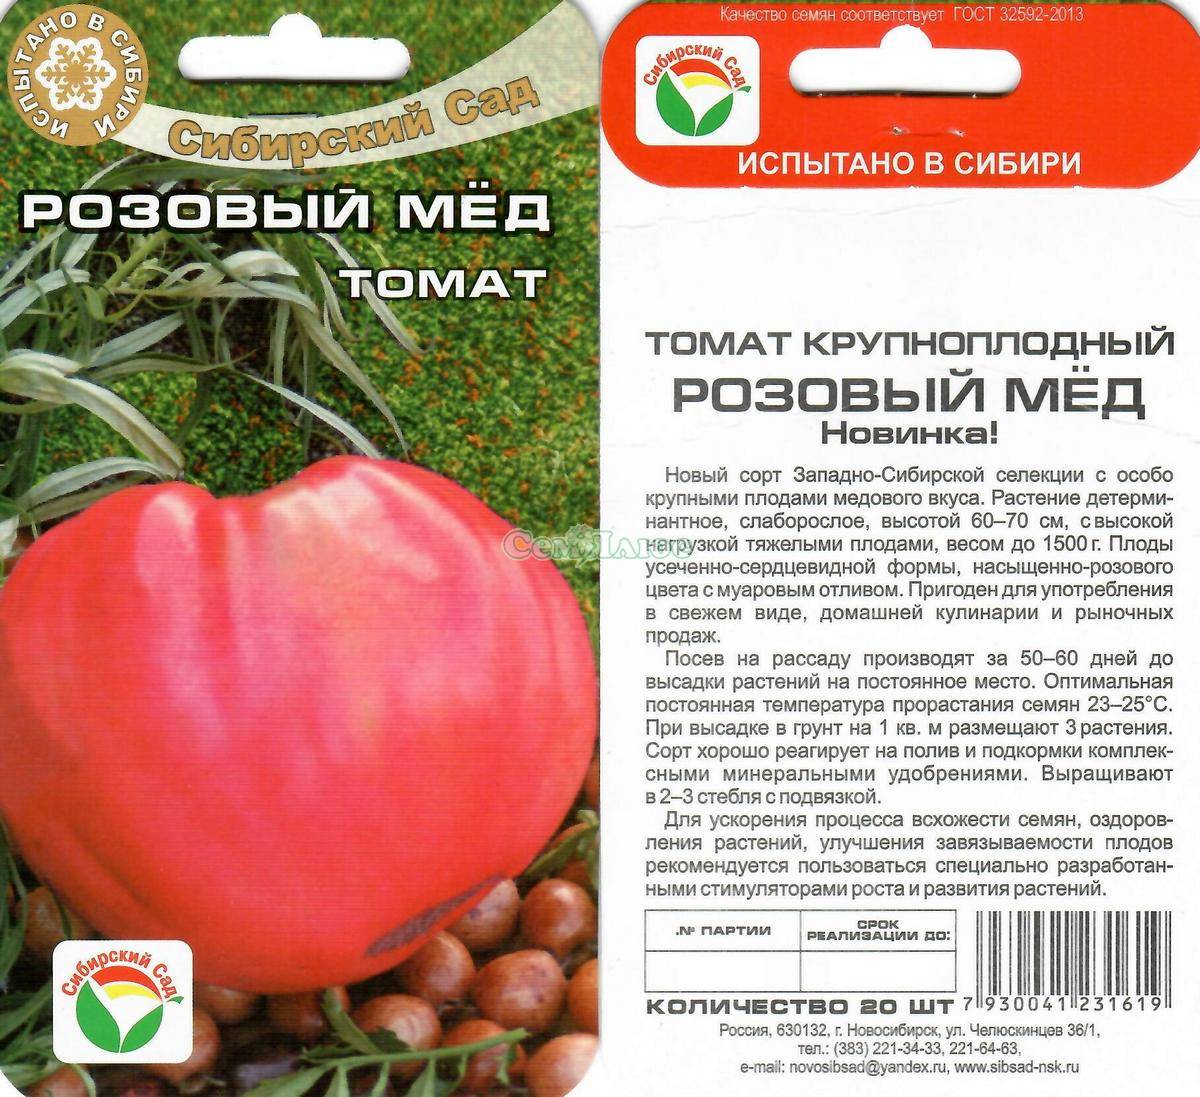 Томат пальмира: характеристика и описание сорта, отзывы об урожайности, фото помидоров